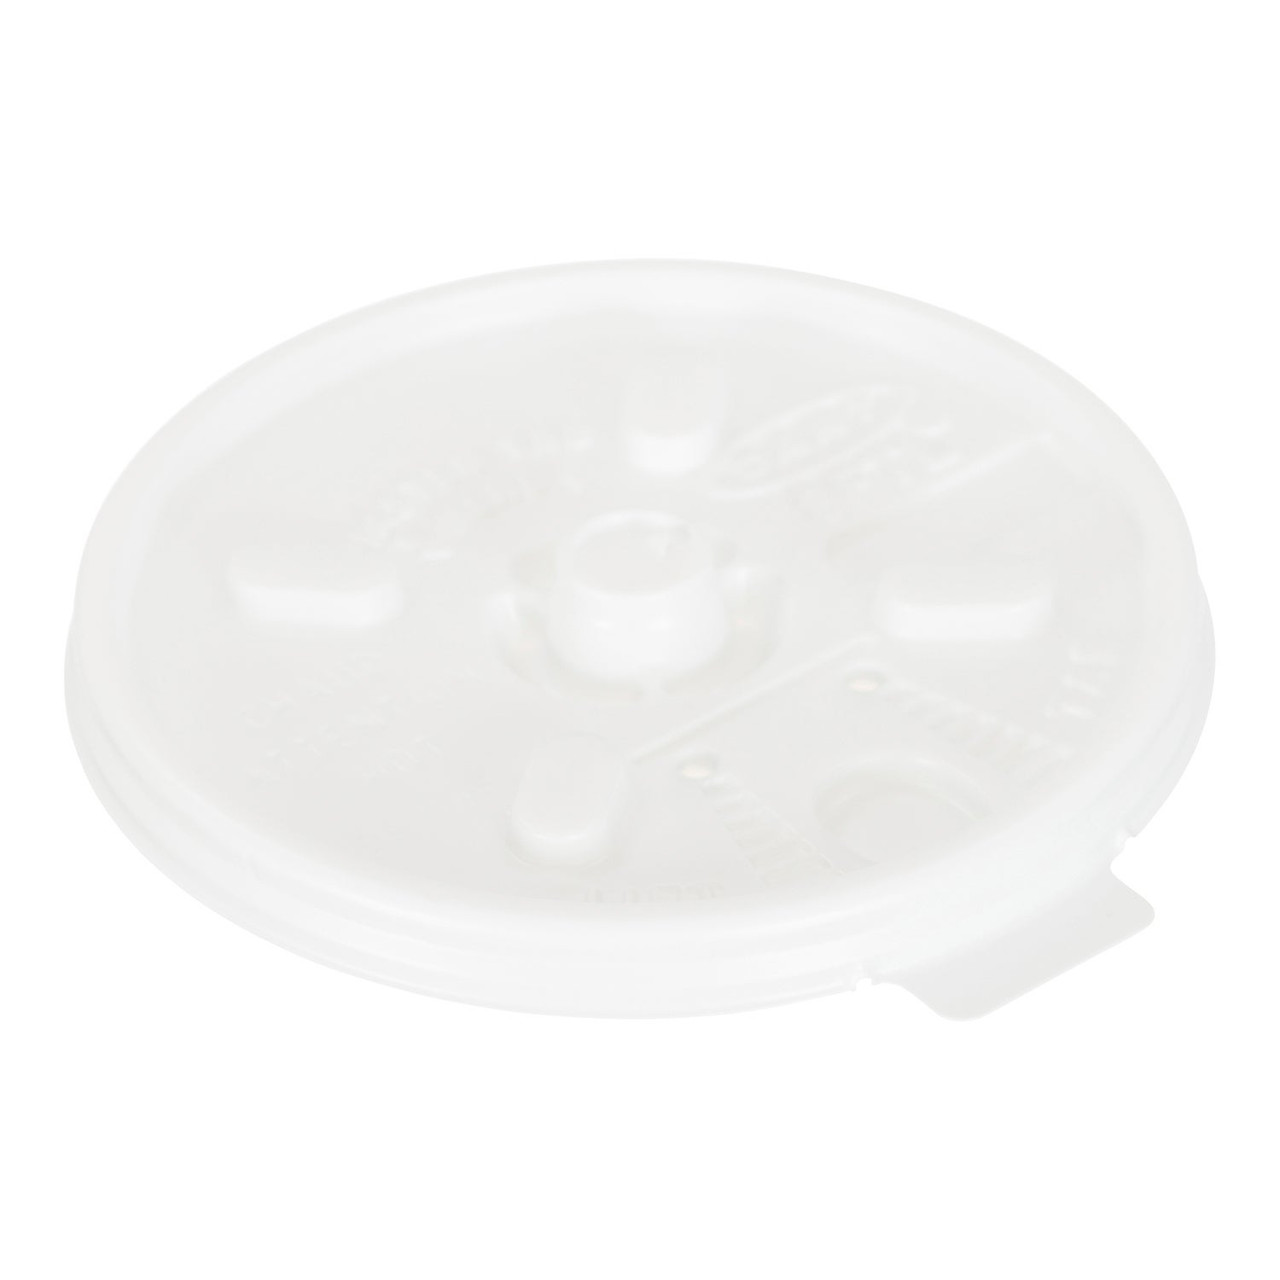 Gordon Choice White Plastic Flat Lids, For 8oz Cup, With Lift Lock | 100UN/Unit, 10 Units/Case